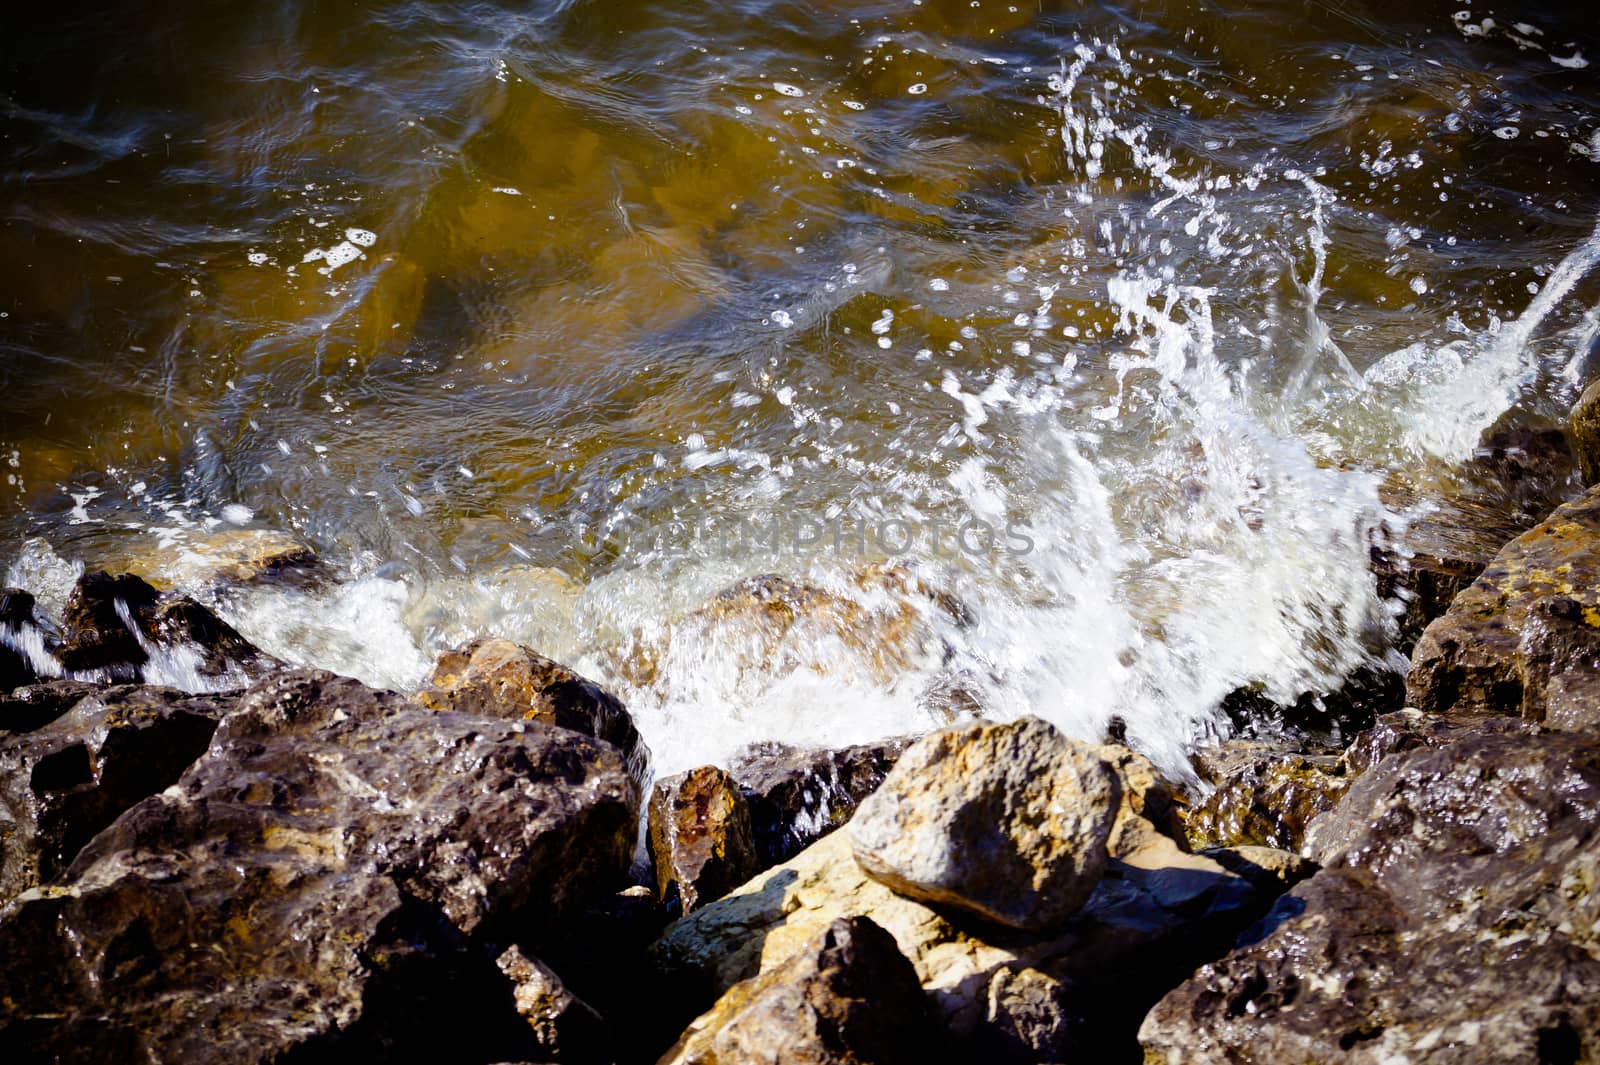 water wave breaks on the rocks by Oleczka11